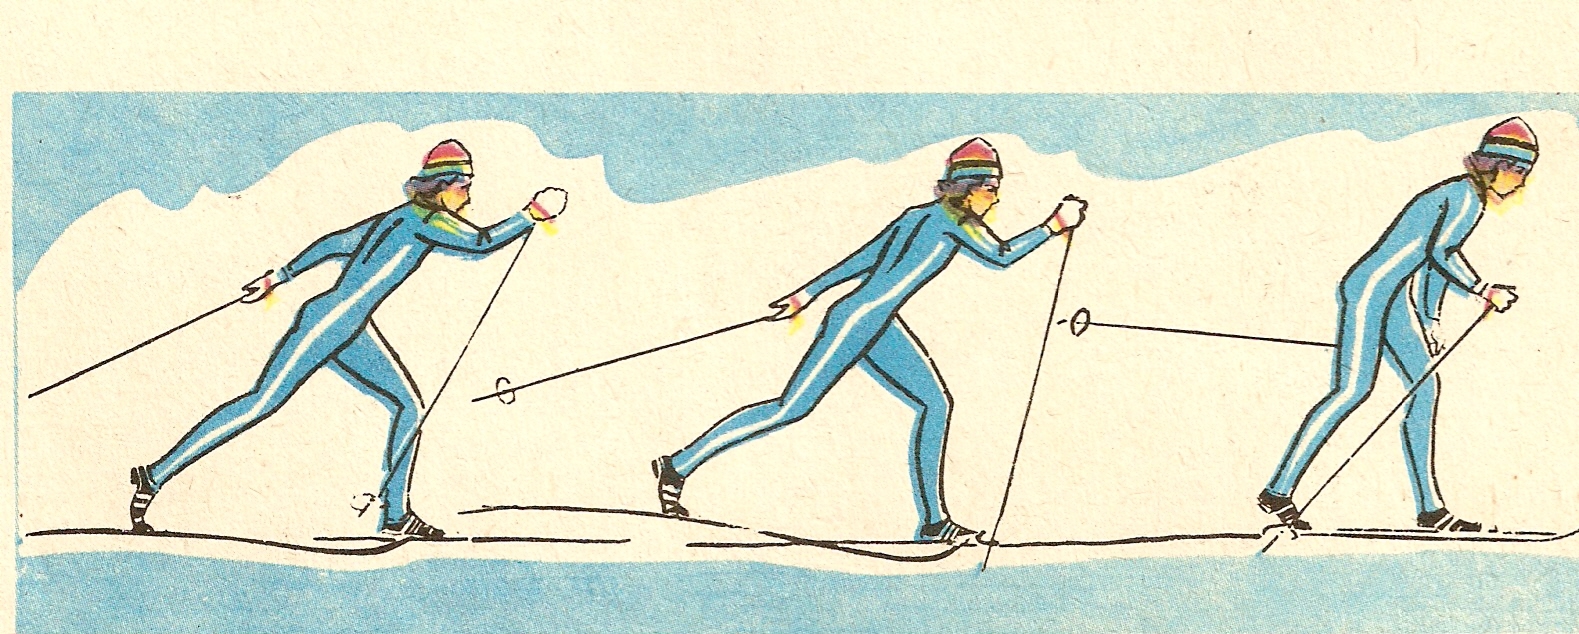 Лыжник передвигаясь. Двухшажный ход на лыжах. Двухшажный классический ход на лыжах. Техника лыжных ходов попеременный ход. Лыжные ходы классика ход.